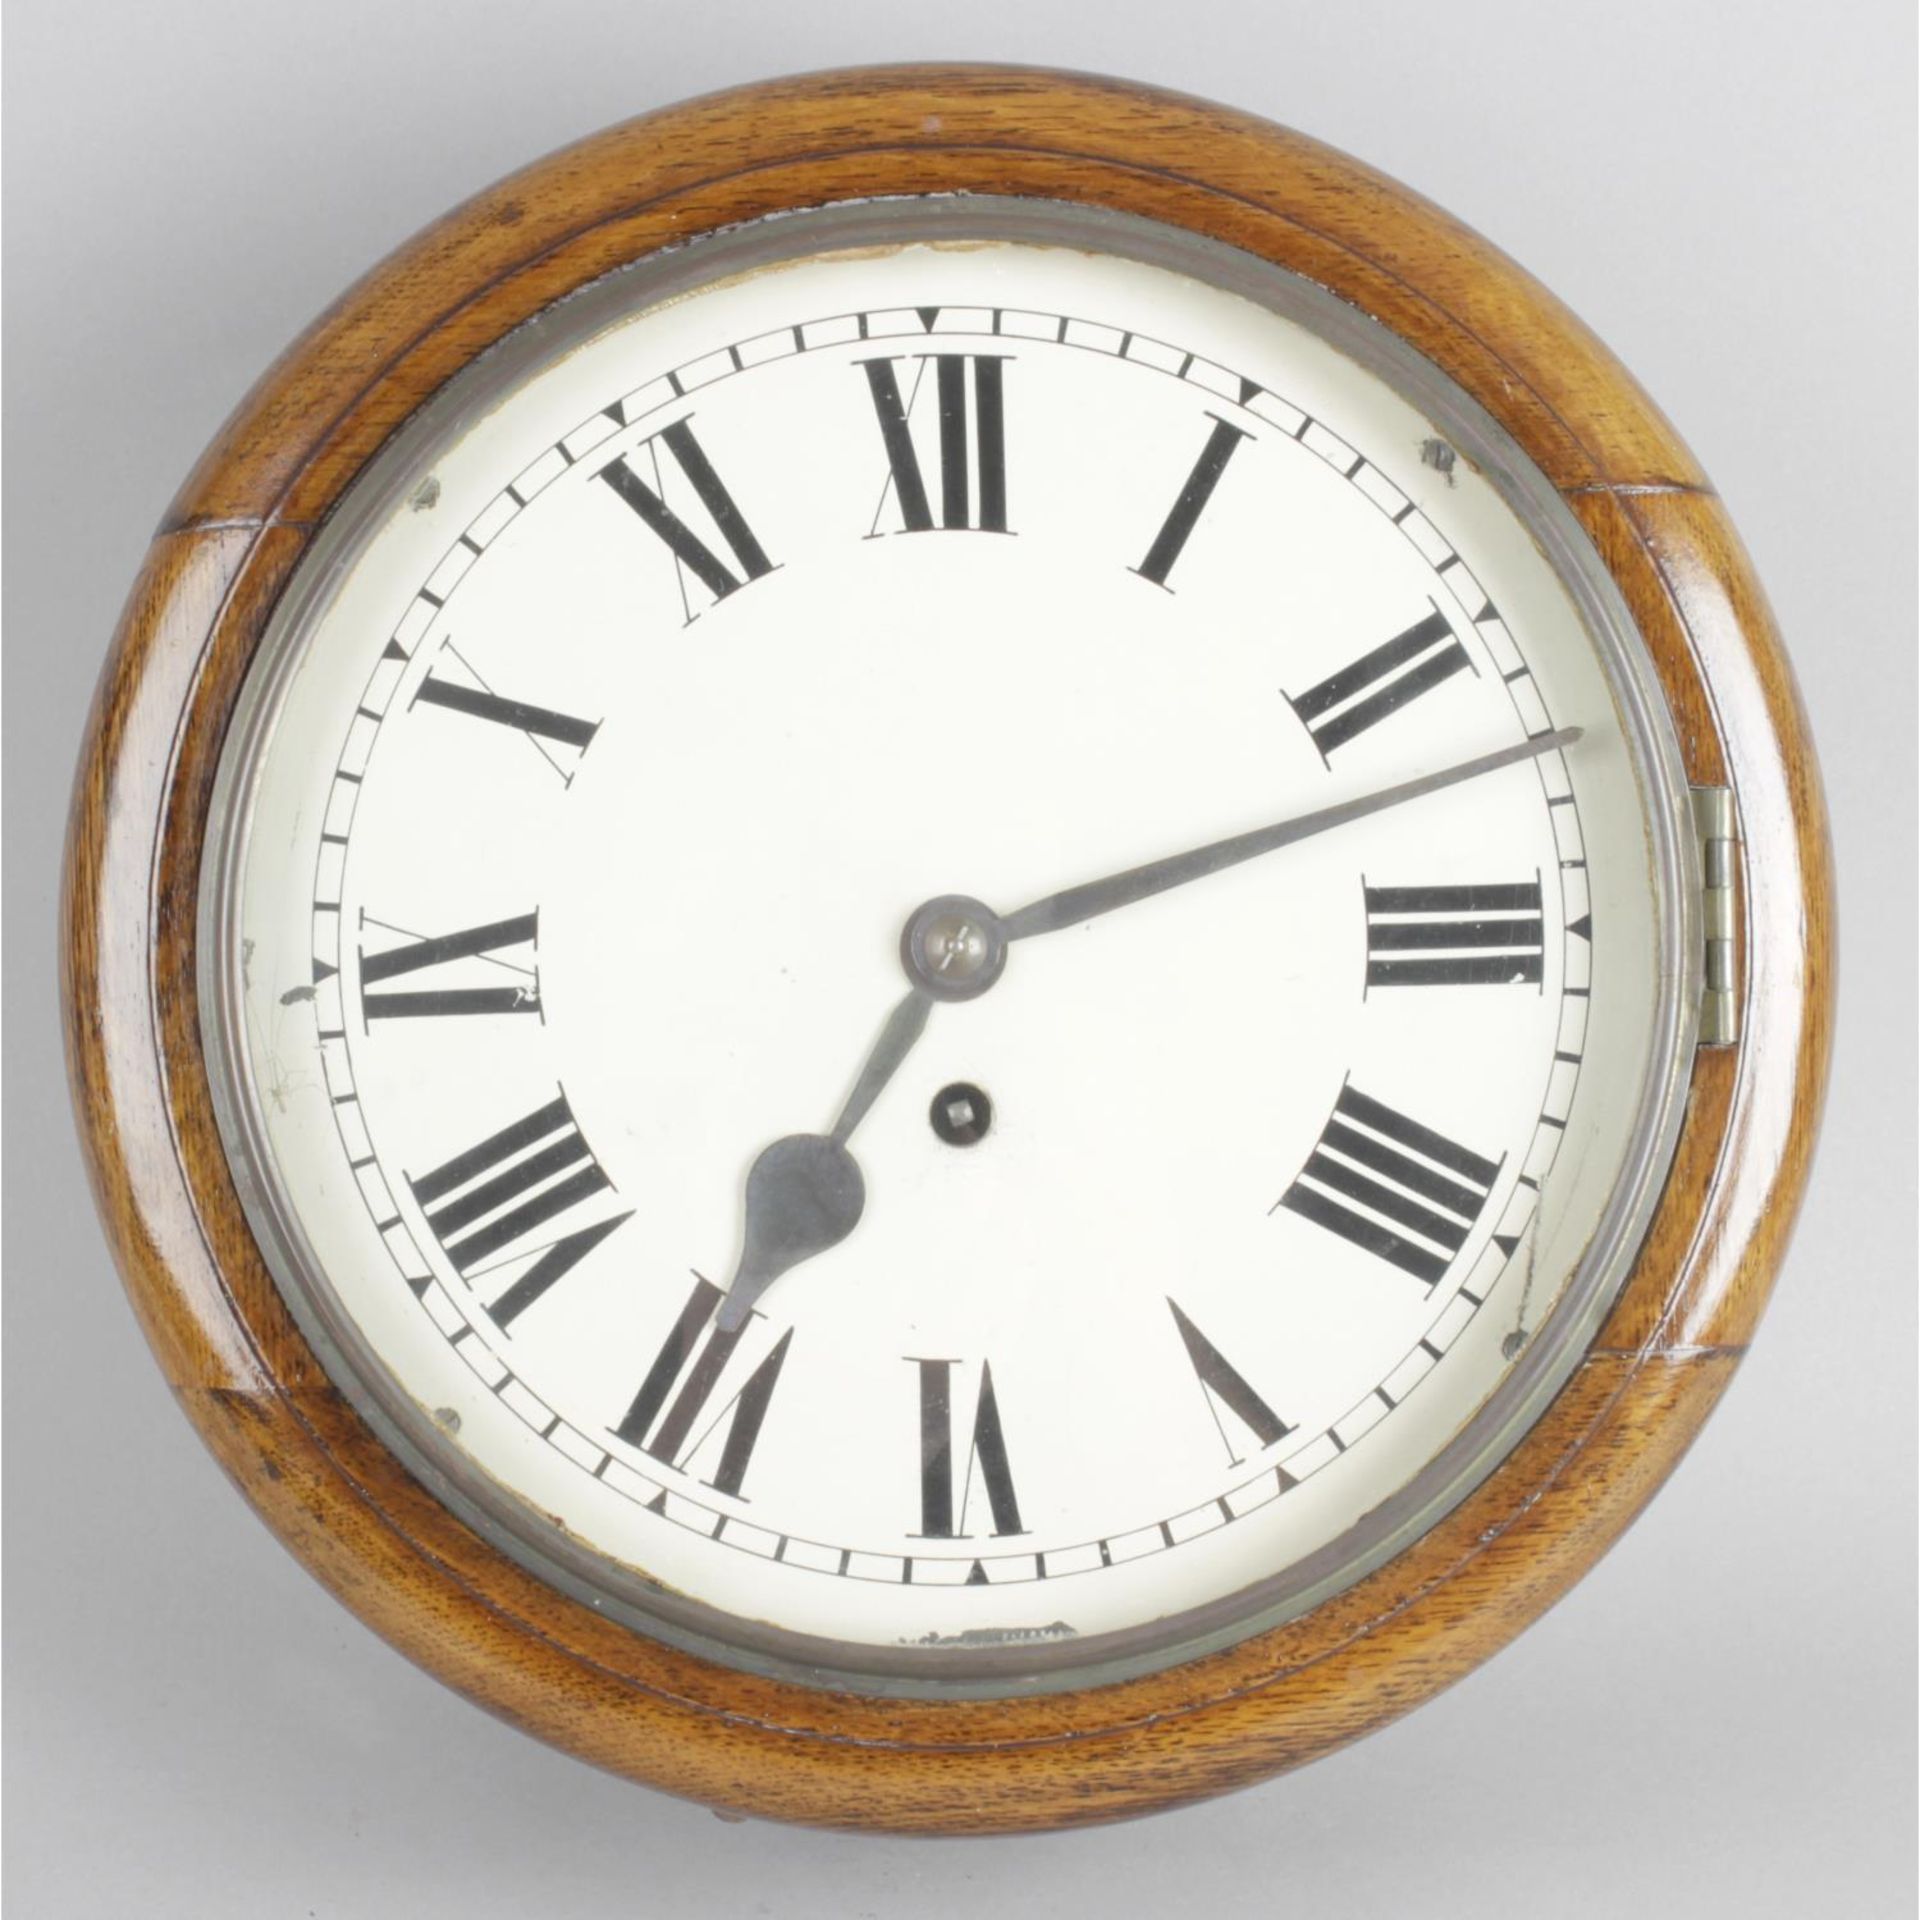 An early 20th century oak cased school-style wall clock,